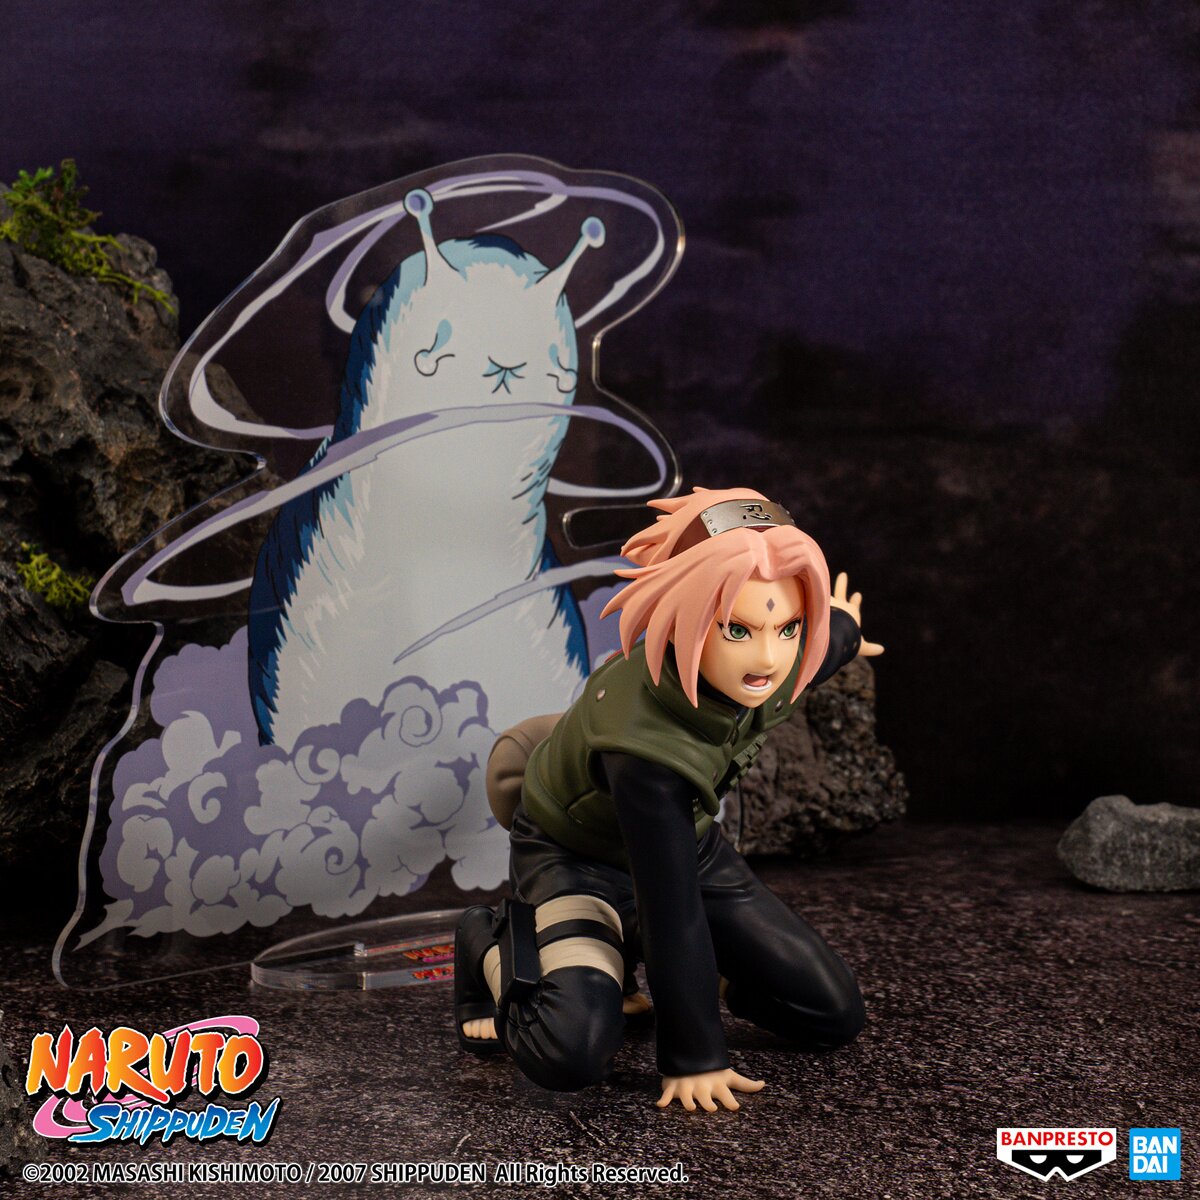 Narutop99 Naruto Haruno Sakura Non-Scale Figure: Banpresto 47% OFF - Tokyo  Otaku Mode (TOM)